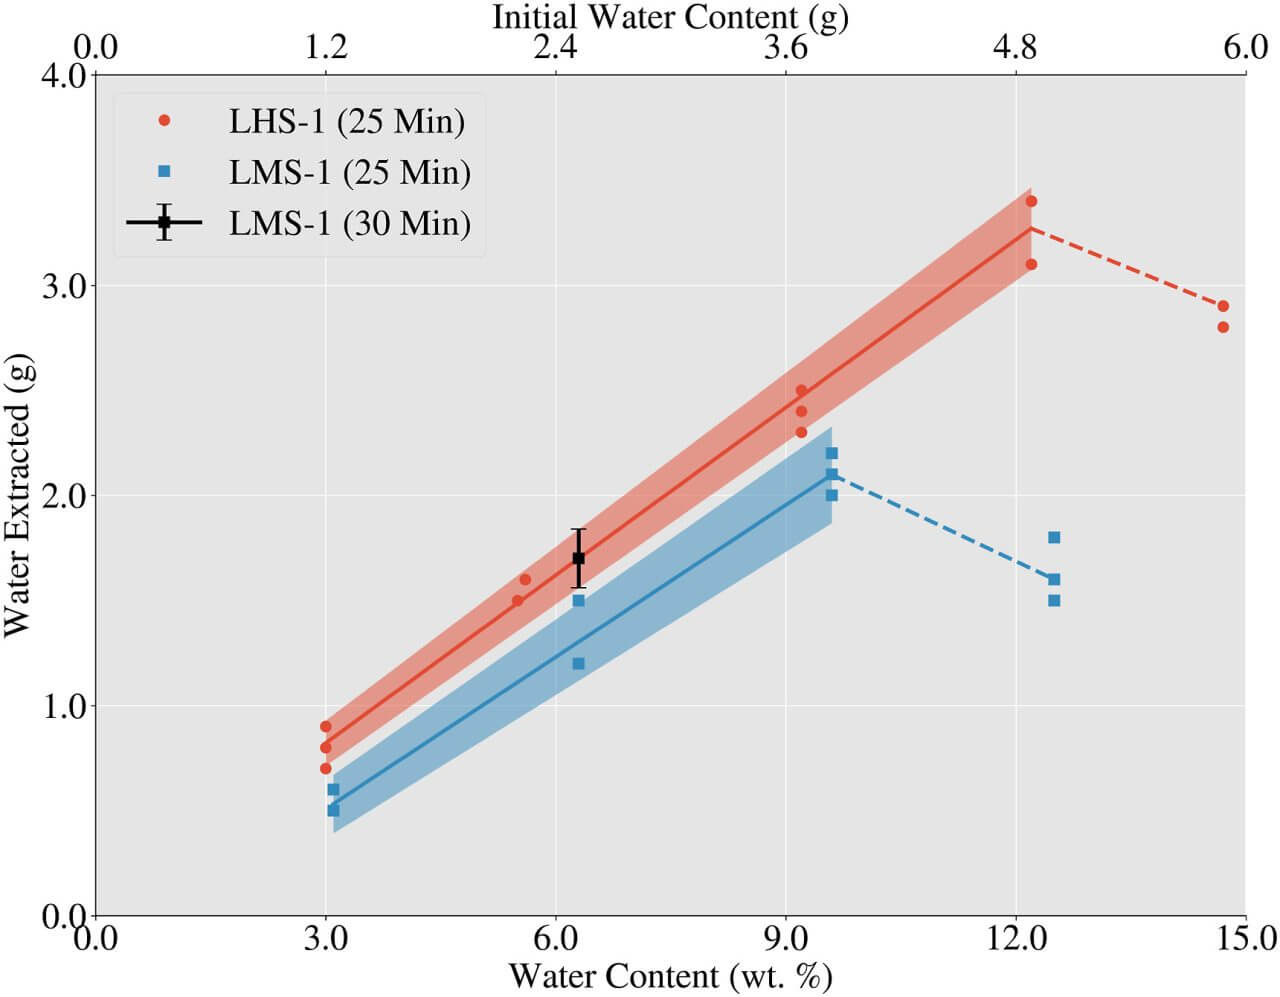 【▲ الشكل 2: النتائج التجريبية مع نوعين من محاكاة الثرى (LHS-1 و LMS-1). تستخرج العينات التي تحتوي على معظم الجليد (على الجانب الأيمن من الرسم البياني) كمية أقل من الماء مقارنة بالعينات التي تحتوي على كمية أقل من الجليد.  (رصيد الصورة: جيمس دي كول وآخرون)】